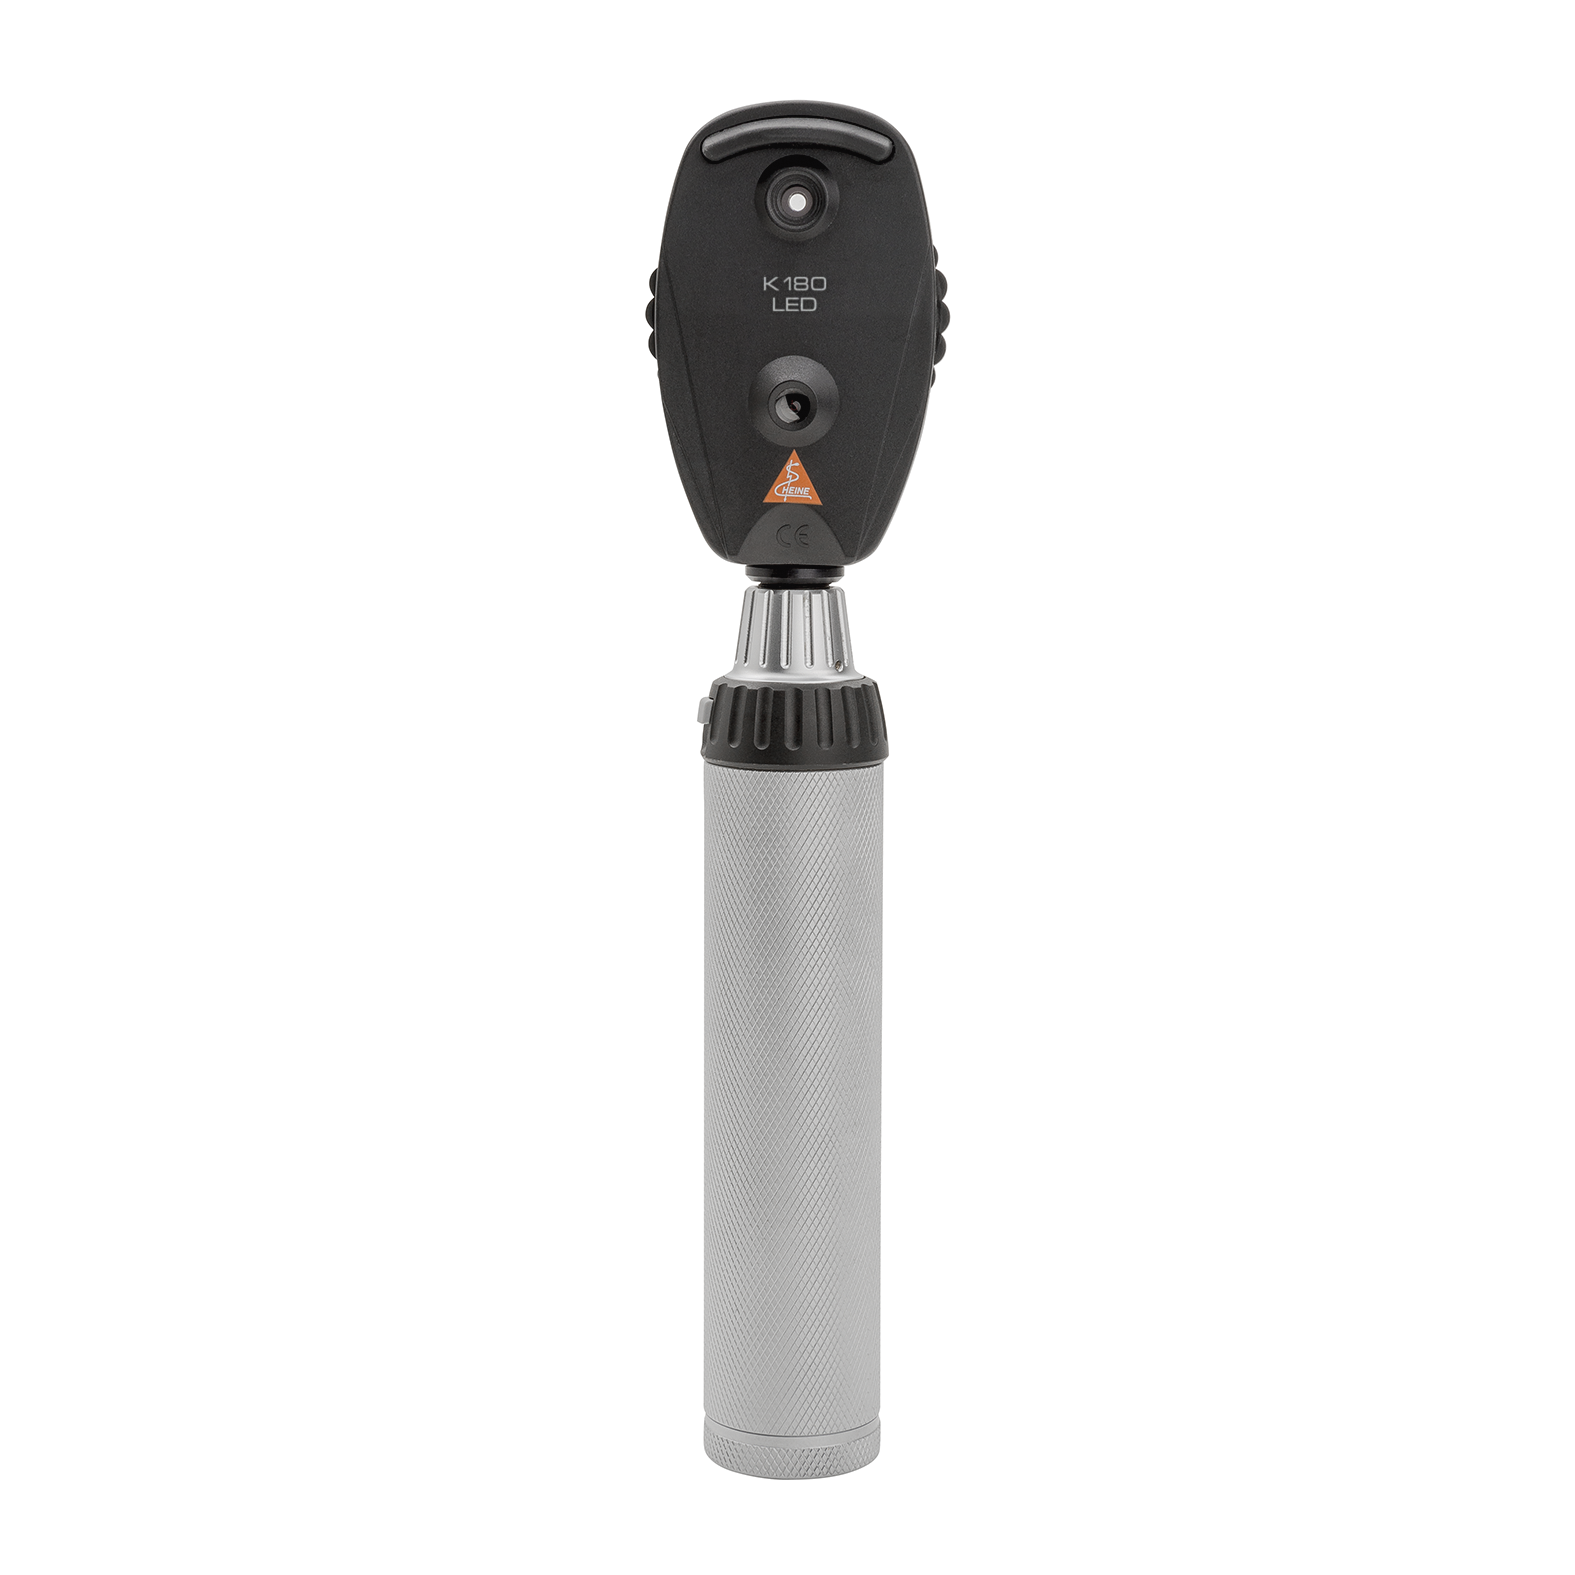 Oftalmoscopio HEINE K180 LED, en versión estándar con rueda de apertura 1, estuche blando, mango recargable BETA4 USB con cable USB y fuente de alimentación enchufable